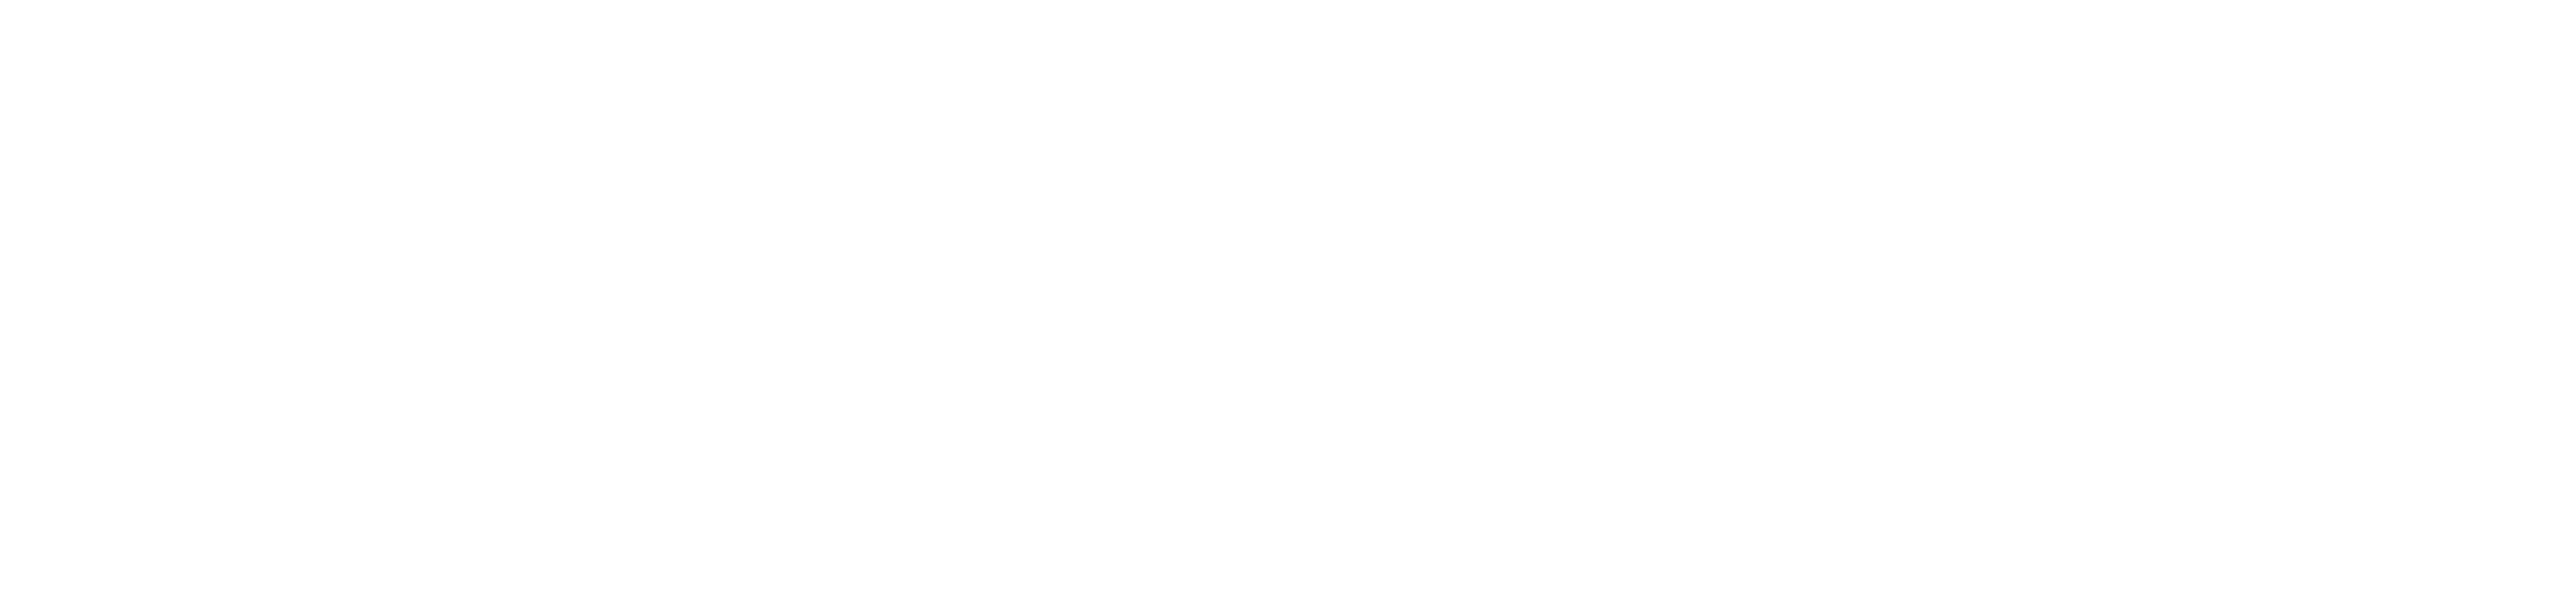 Leveledge